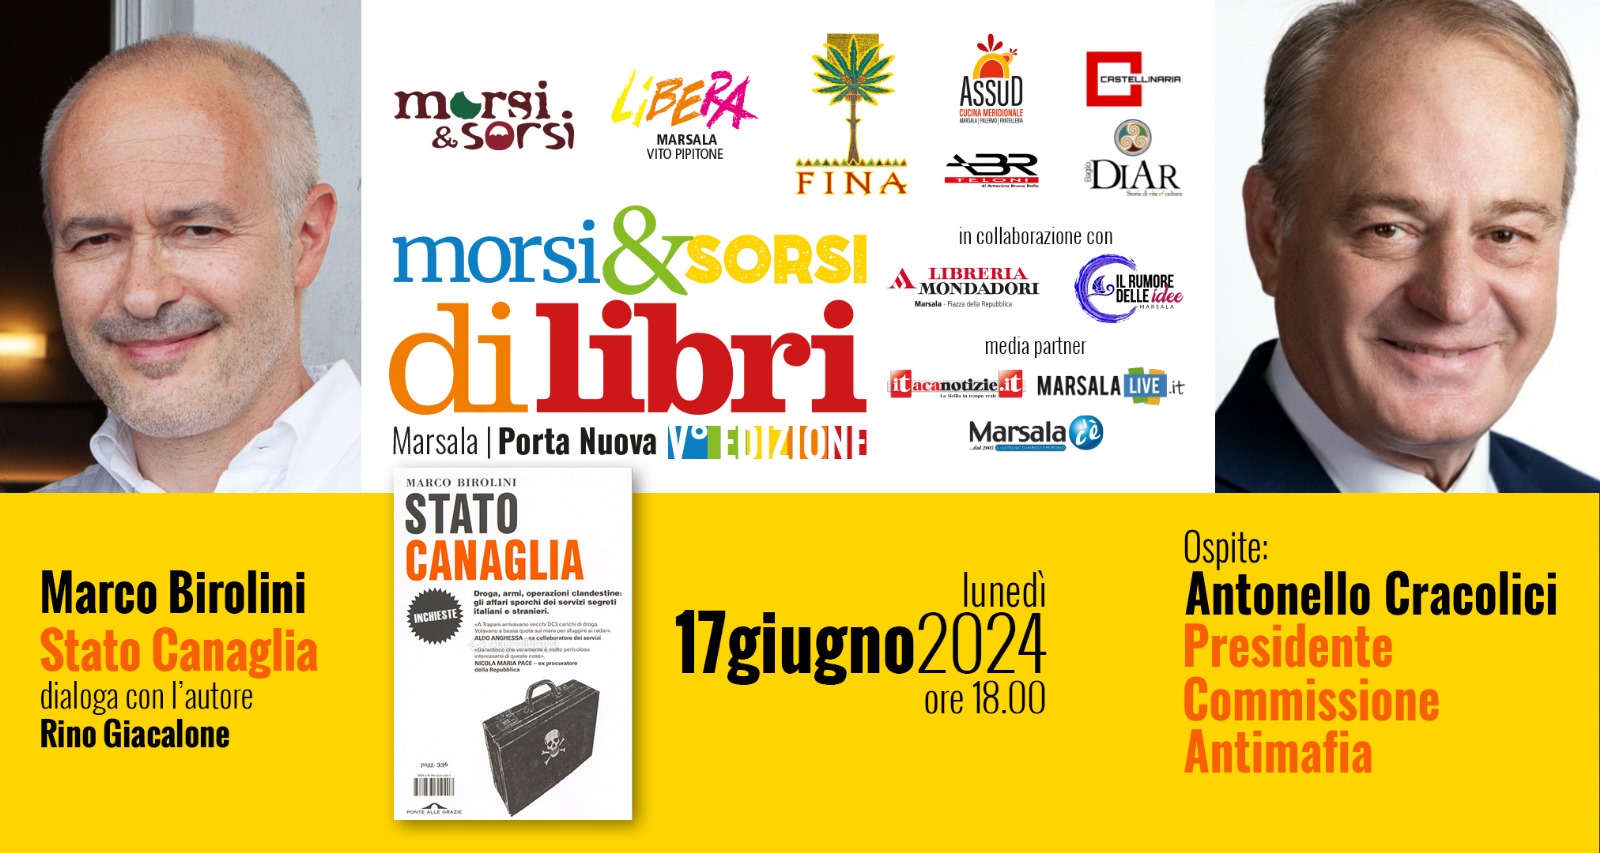 Morsi & Sorsi di libri: Marco Birolini presenta a Marsala ‘Stato Canaglia’